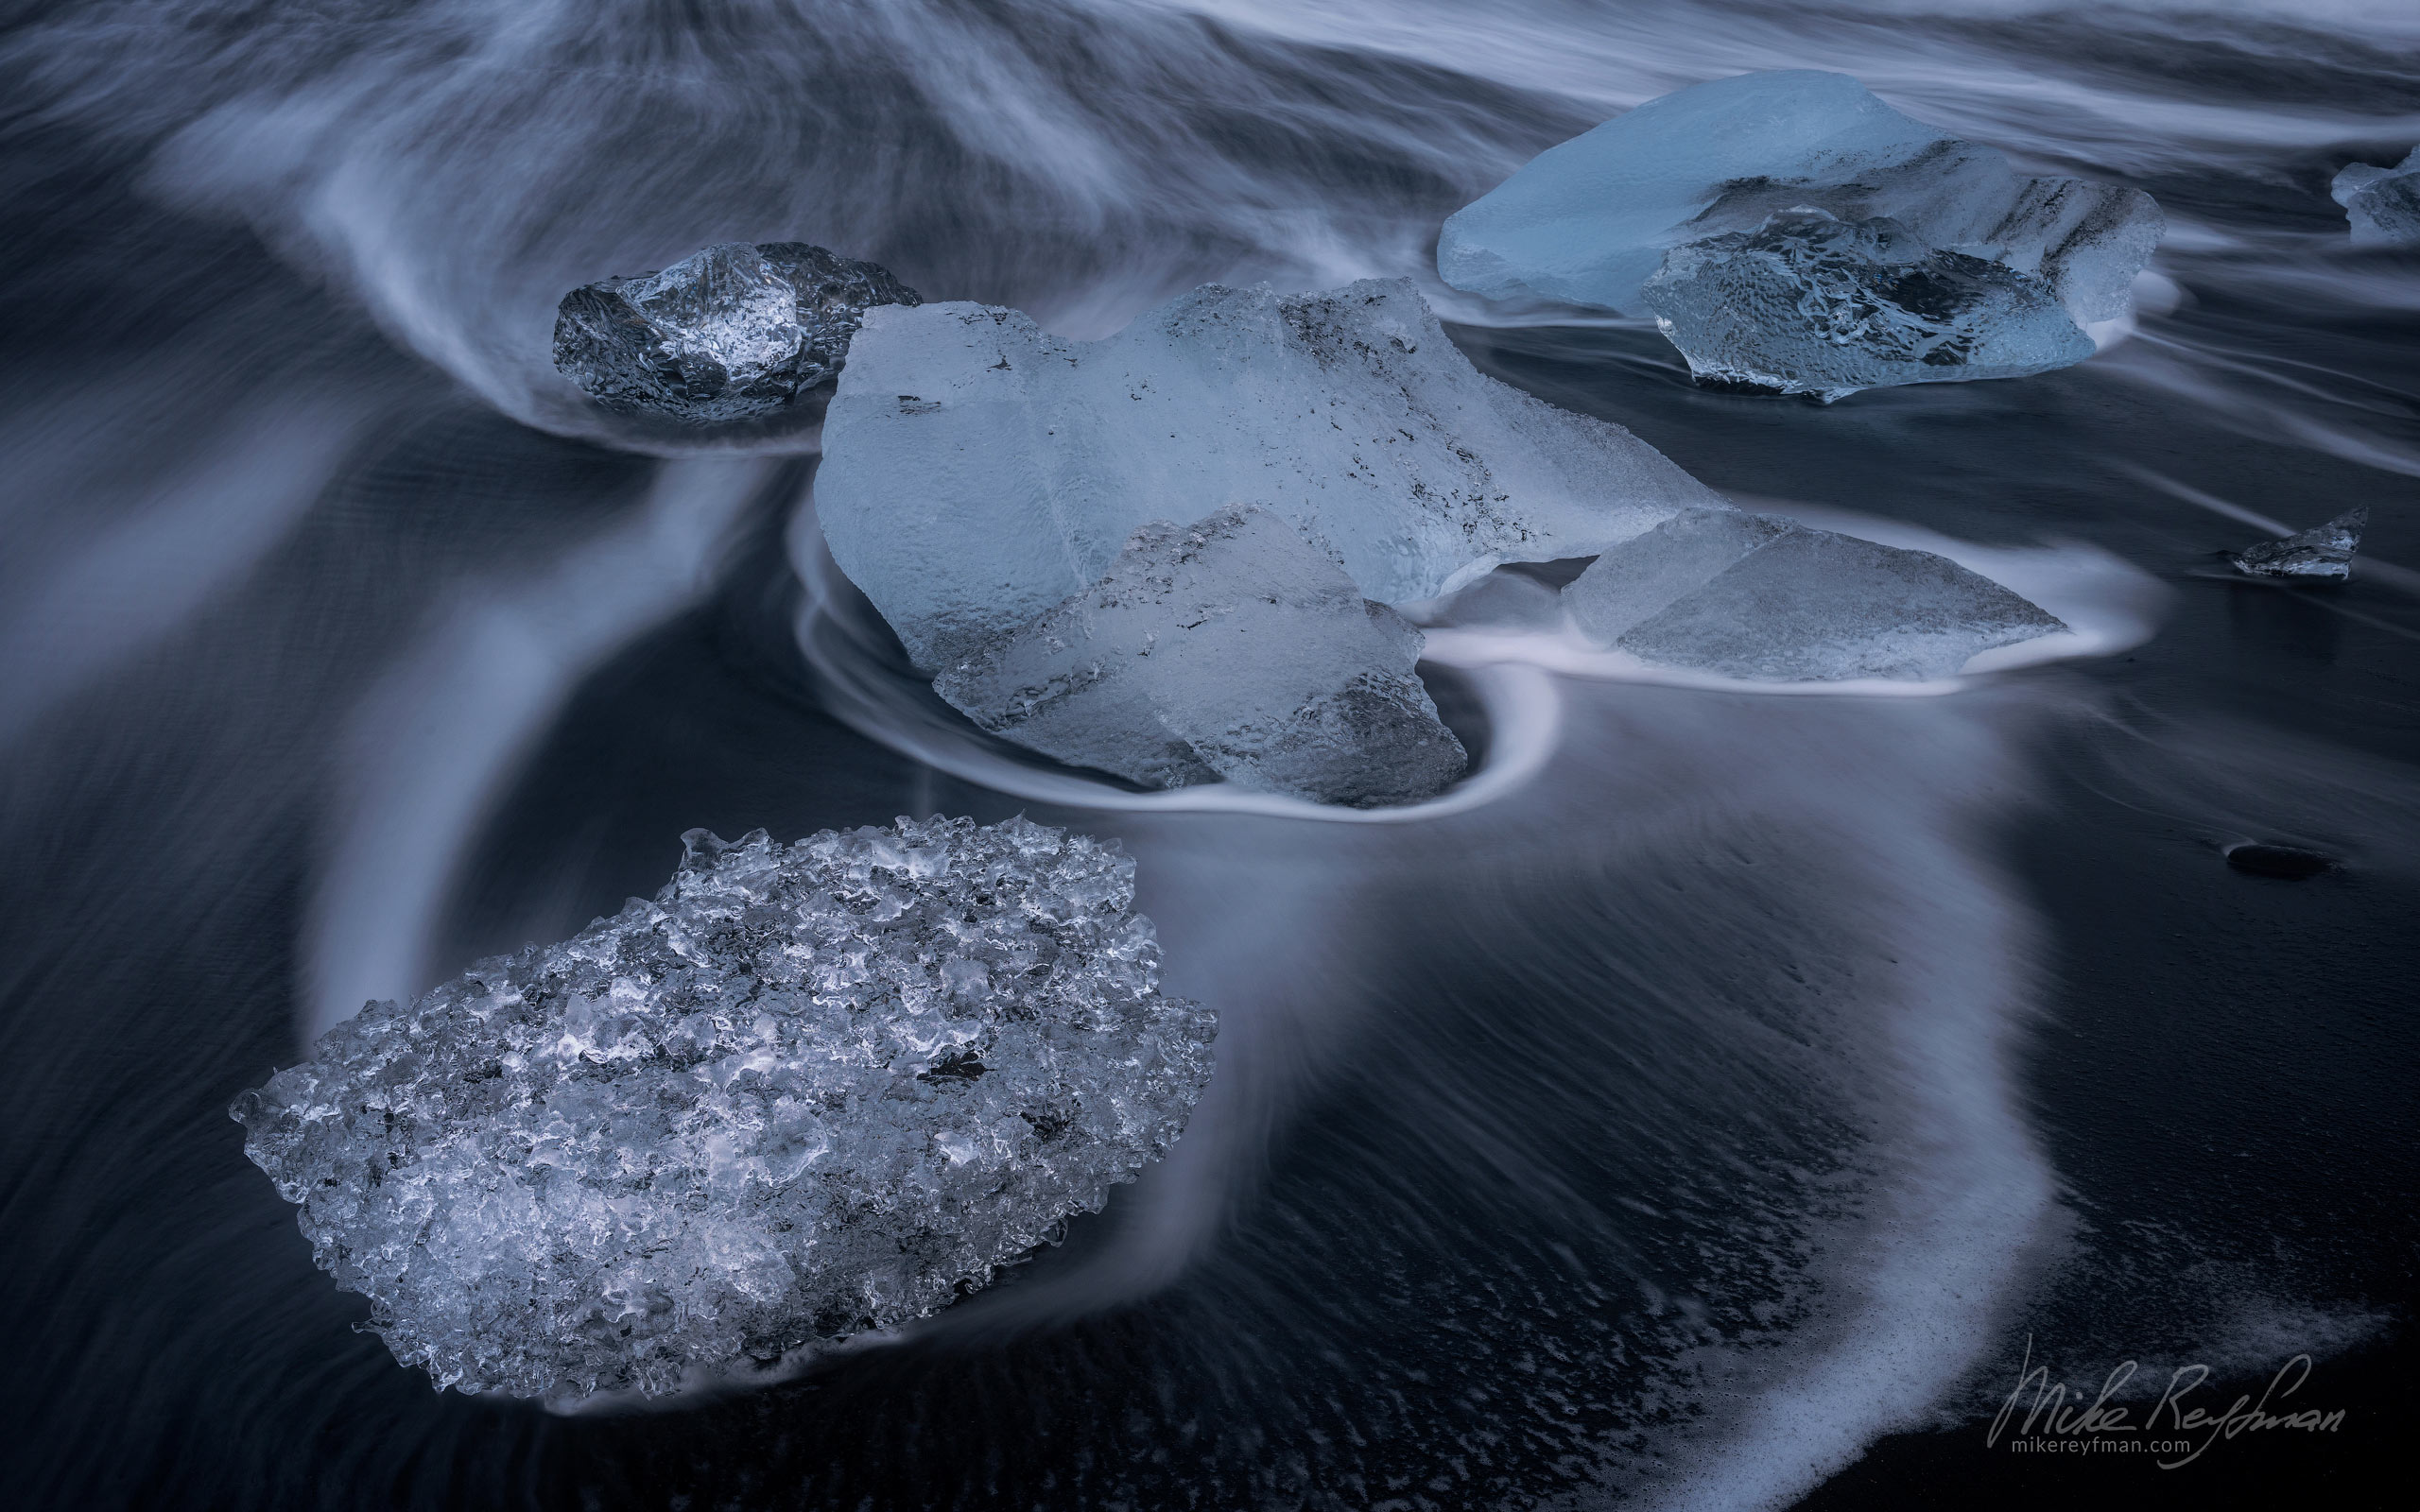 Sparkling Icebergs on the black sand of the magical Diamond Beach (Breiðamerkursandur), next to Jökulsárlón Glacier Lagoon on the South Coast of Iceland IC-ICE 031 _10P3844 - Where Lava Meets the Ocean. Iceland coastline. - Mike Reyfman Photography